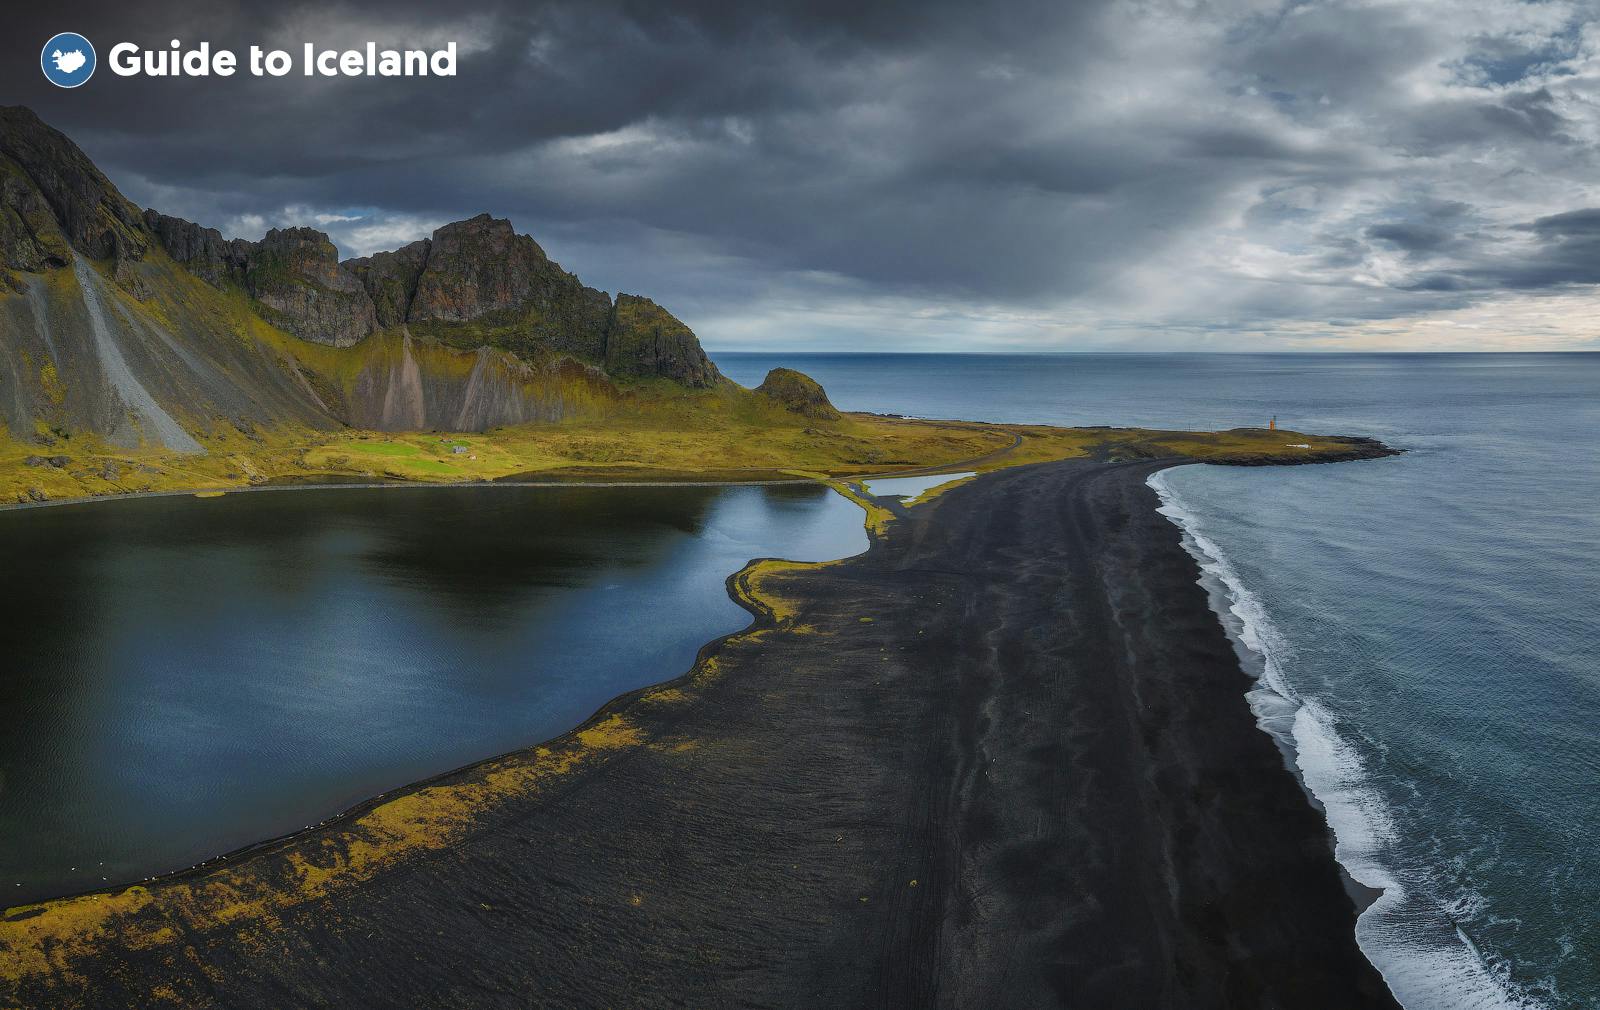 “冰岛版天空之镜”Vestrahorn西角山位于冰岛东南部的Stokknes半岛之上